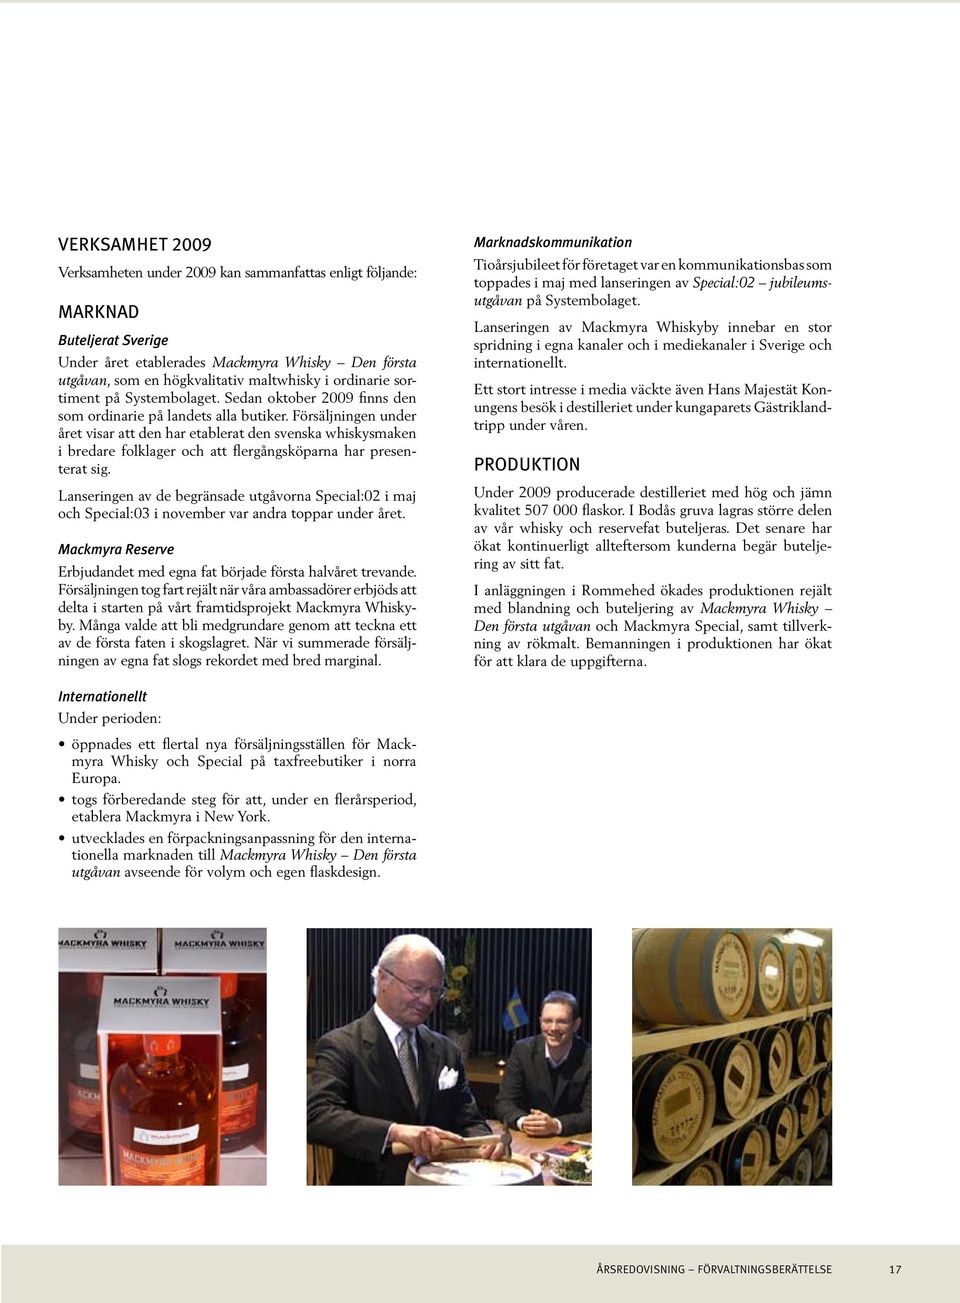 Försäljningen under året visar att den har etablerat den svenska whiskysmaken i bredare folklager och att flergångsköparna har presenterat sig.